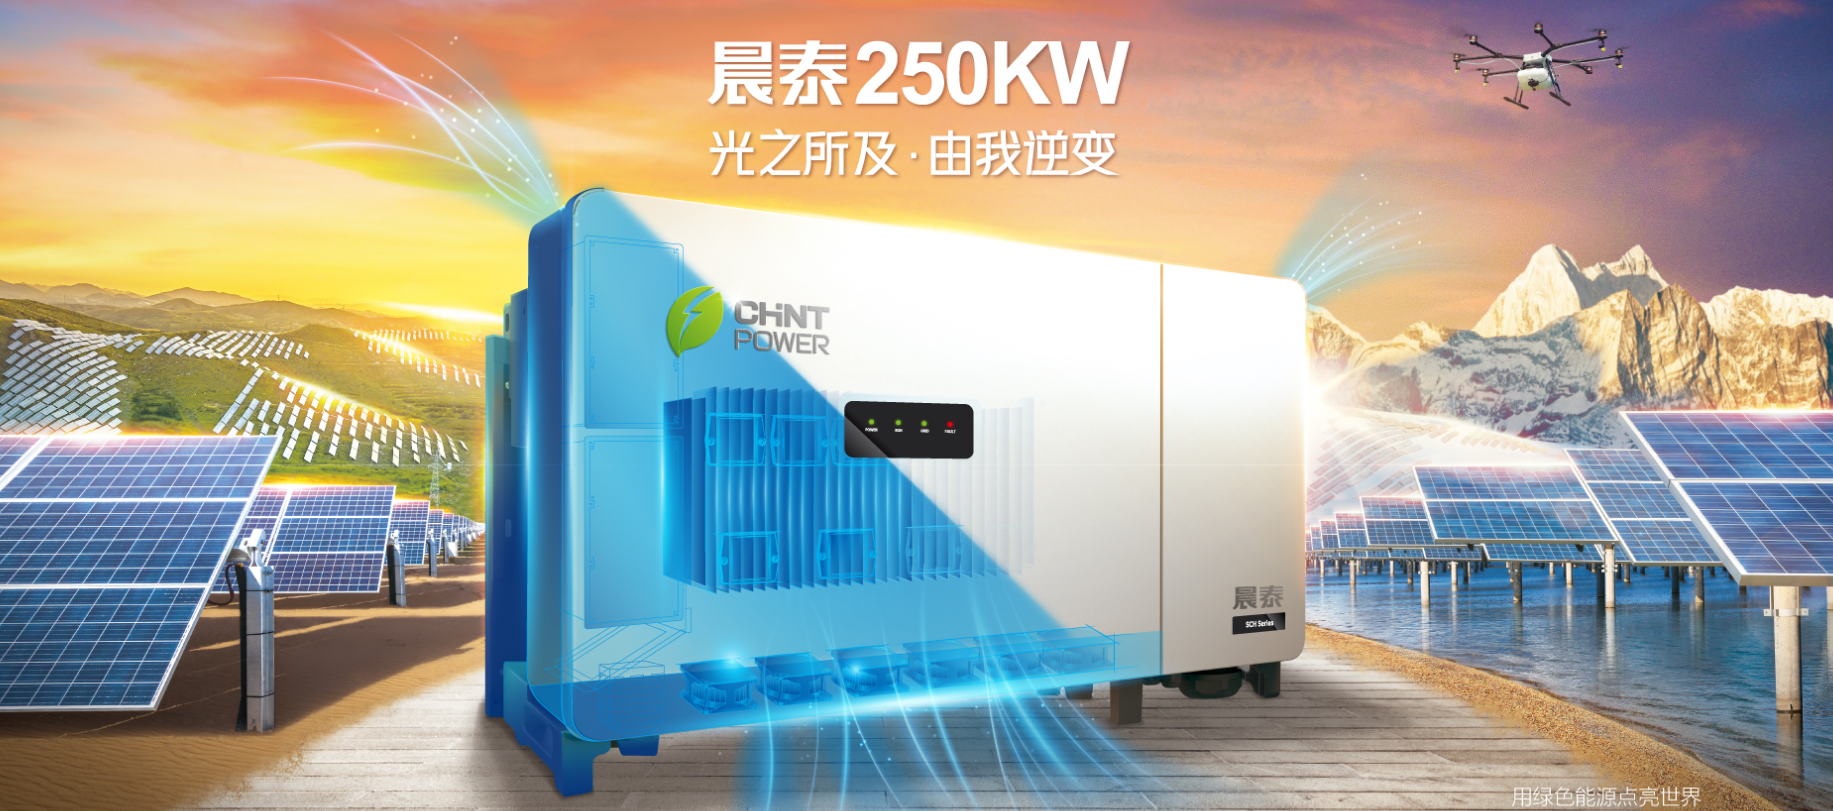 上海正泰电源系统有限公司Extech PLM系统升级项目成功验收